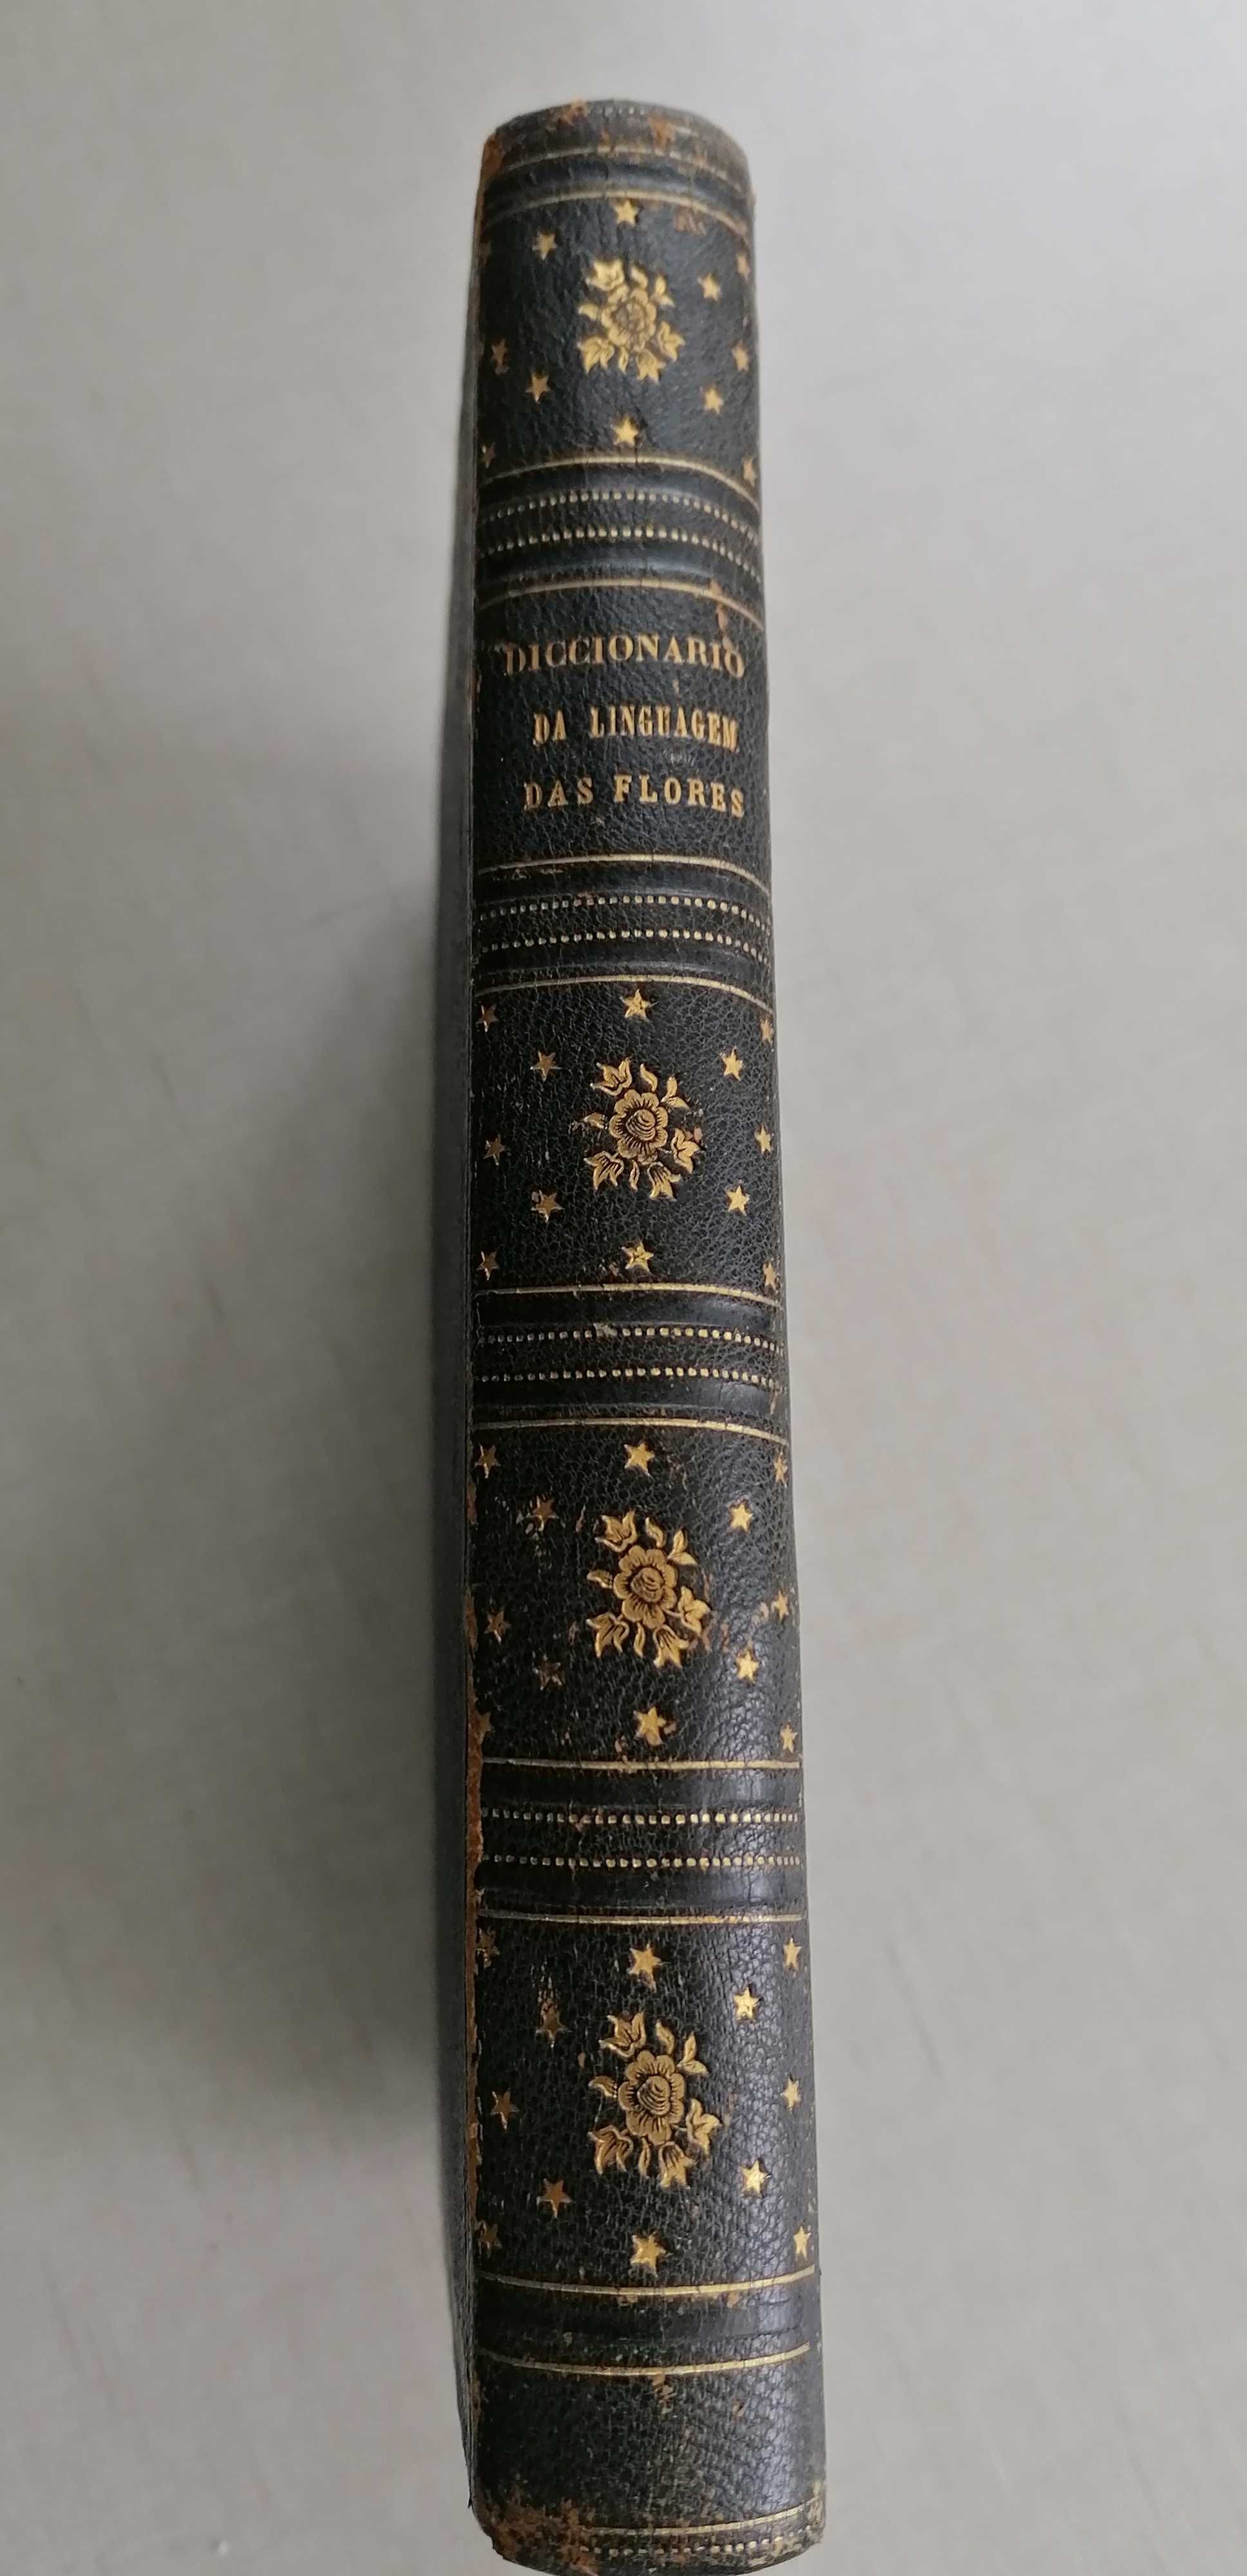 Diccionario da linguagem das flores, imprensa nacional, 1864